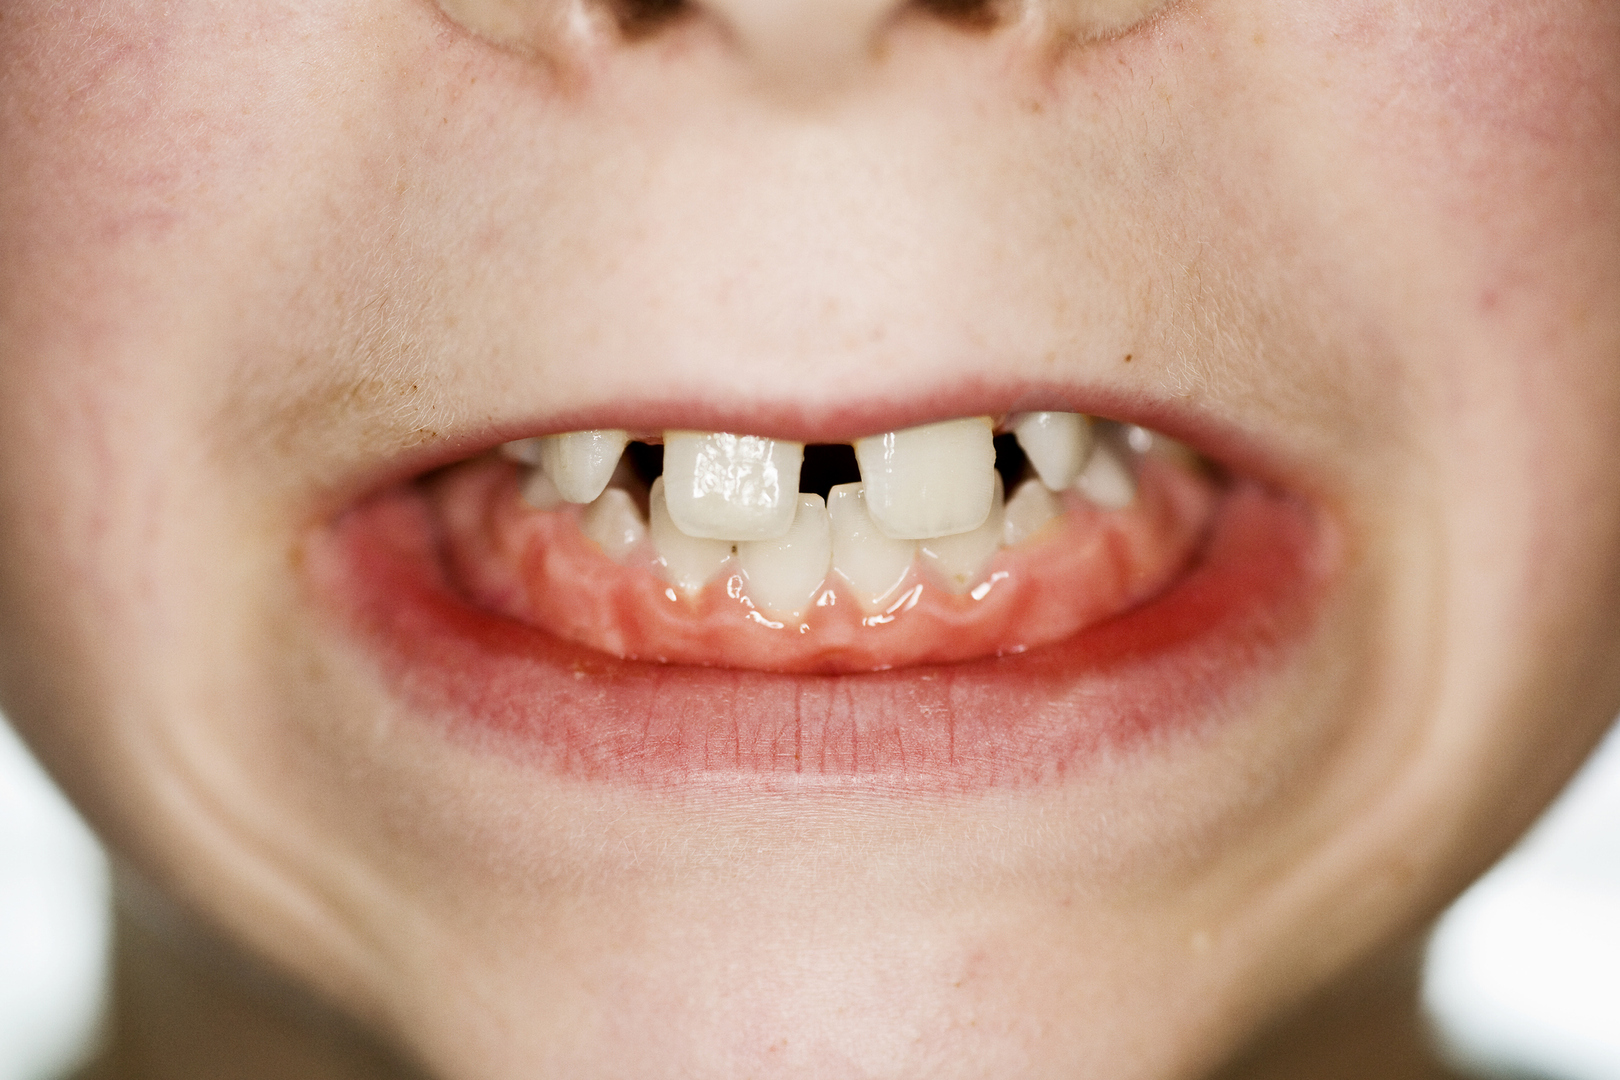 لماذا يطور البعض فراغات بين أسنانهم؟